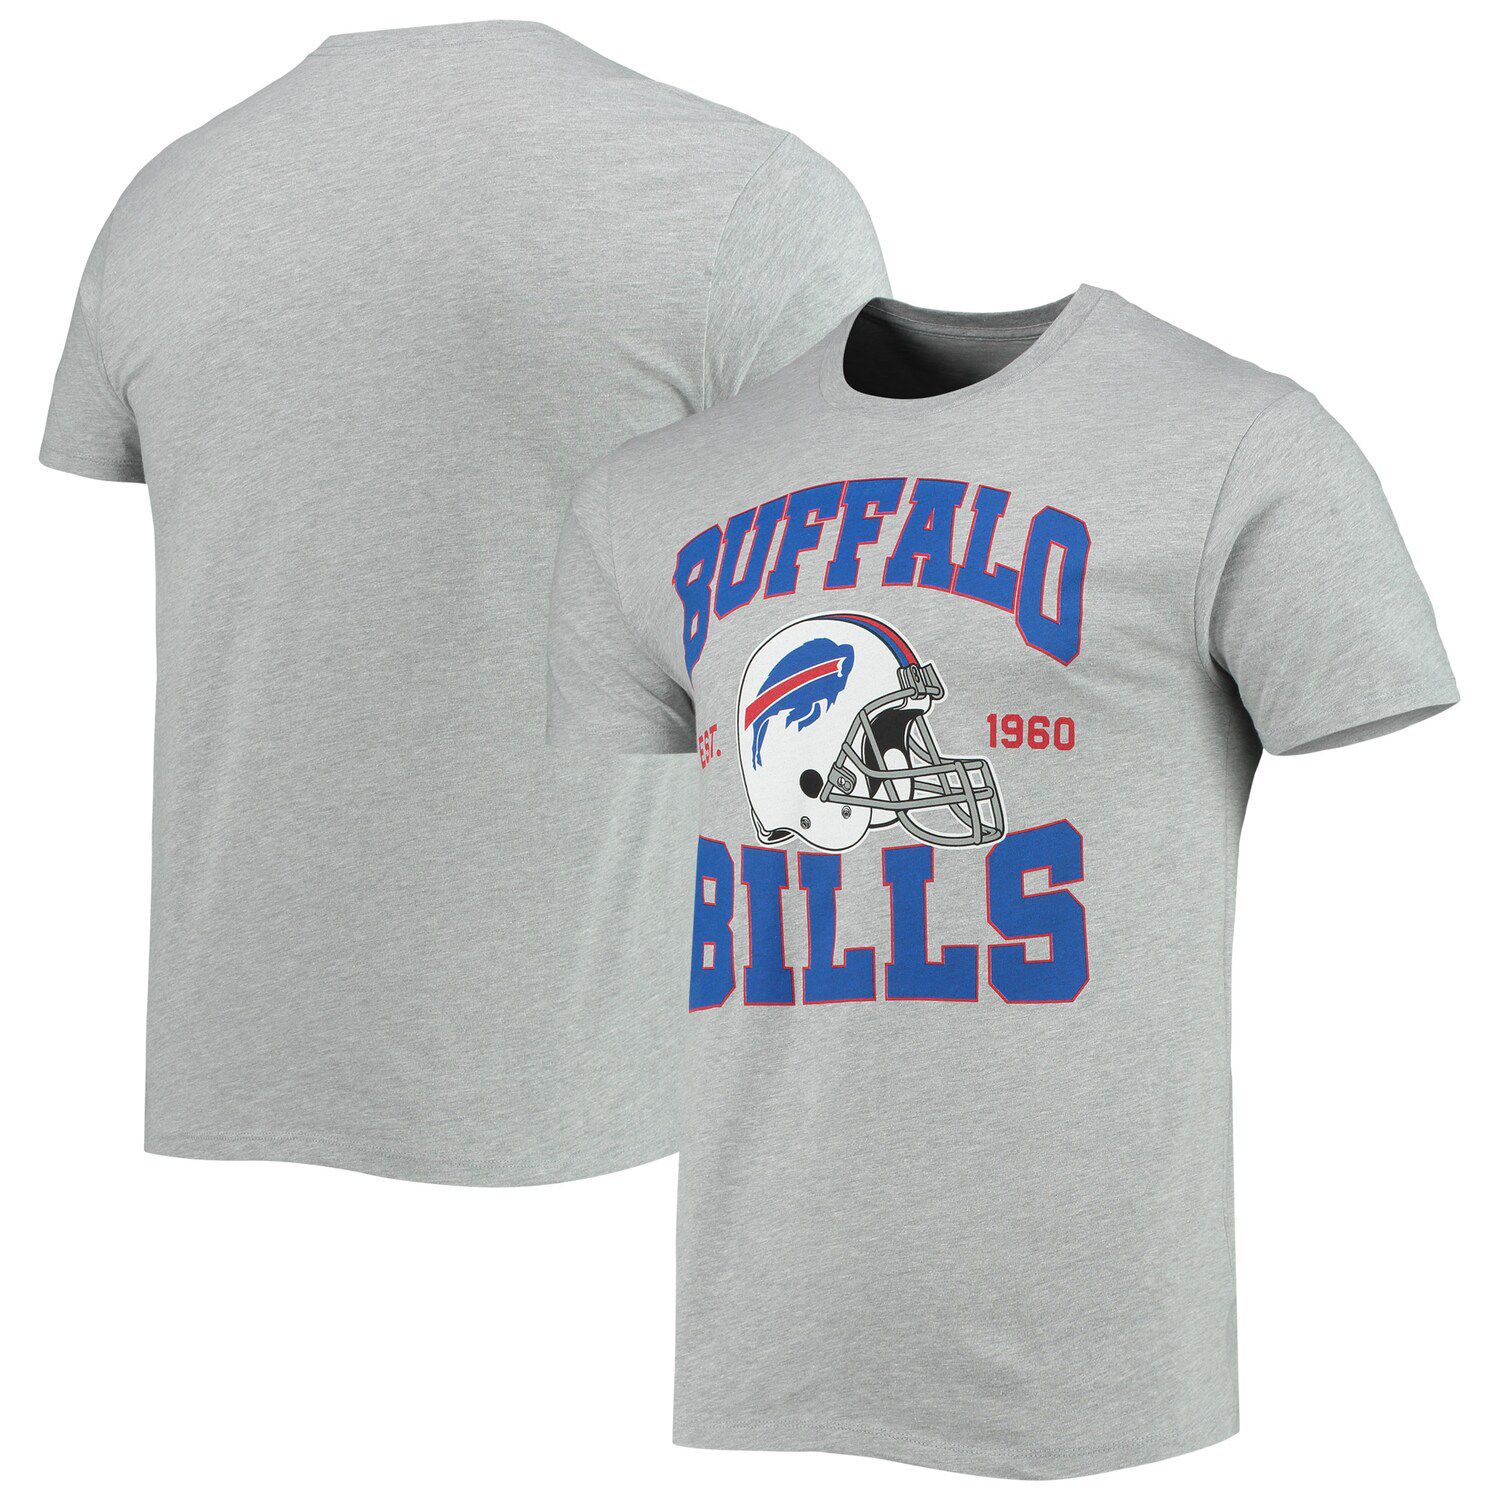 Buffalo Bills Official Merchandise